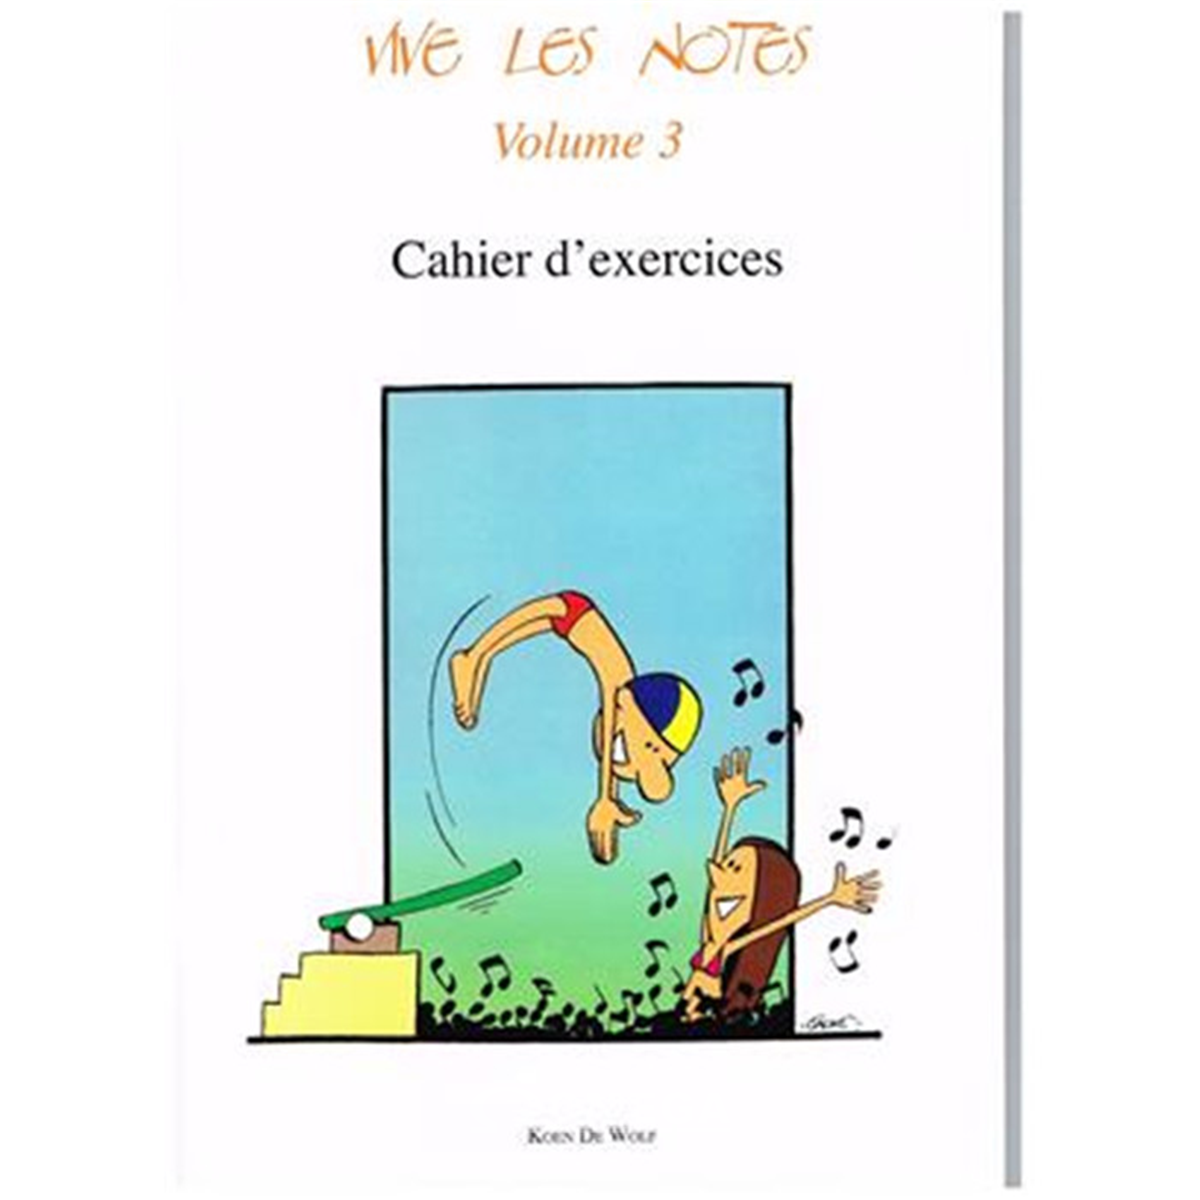 DE WOLF Koen Vive les notes 3 - Cahier d'Exercices